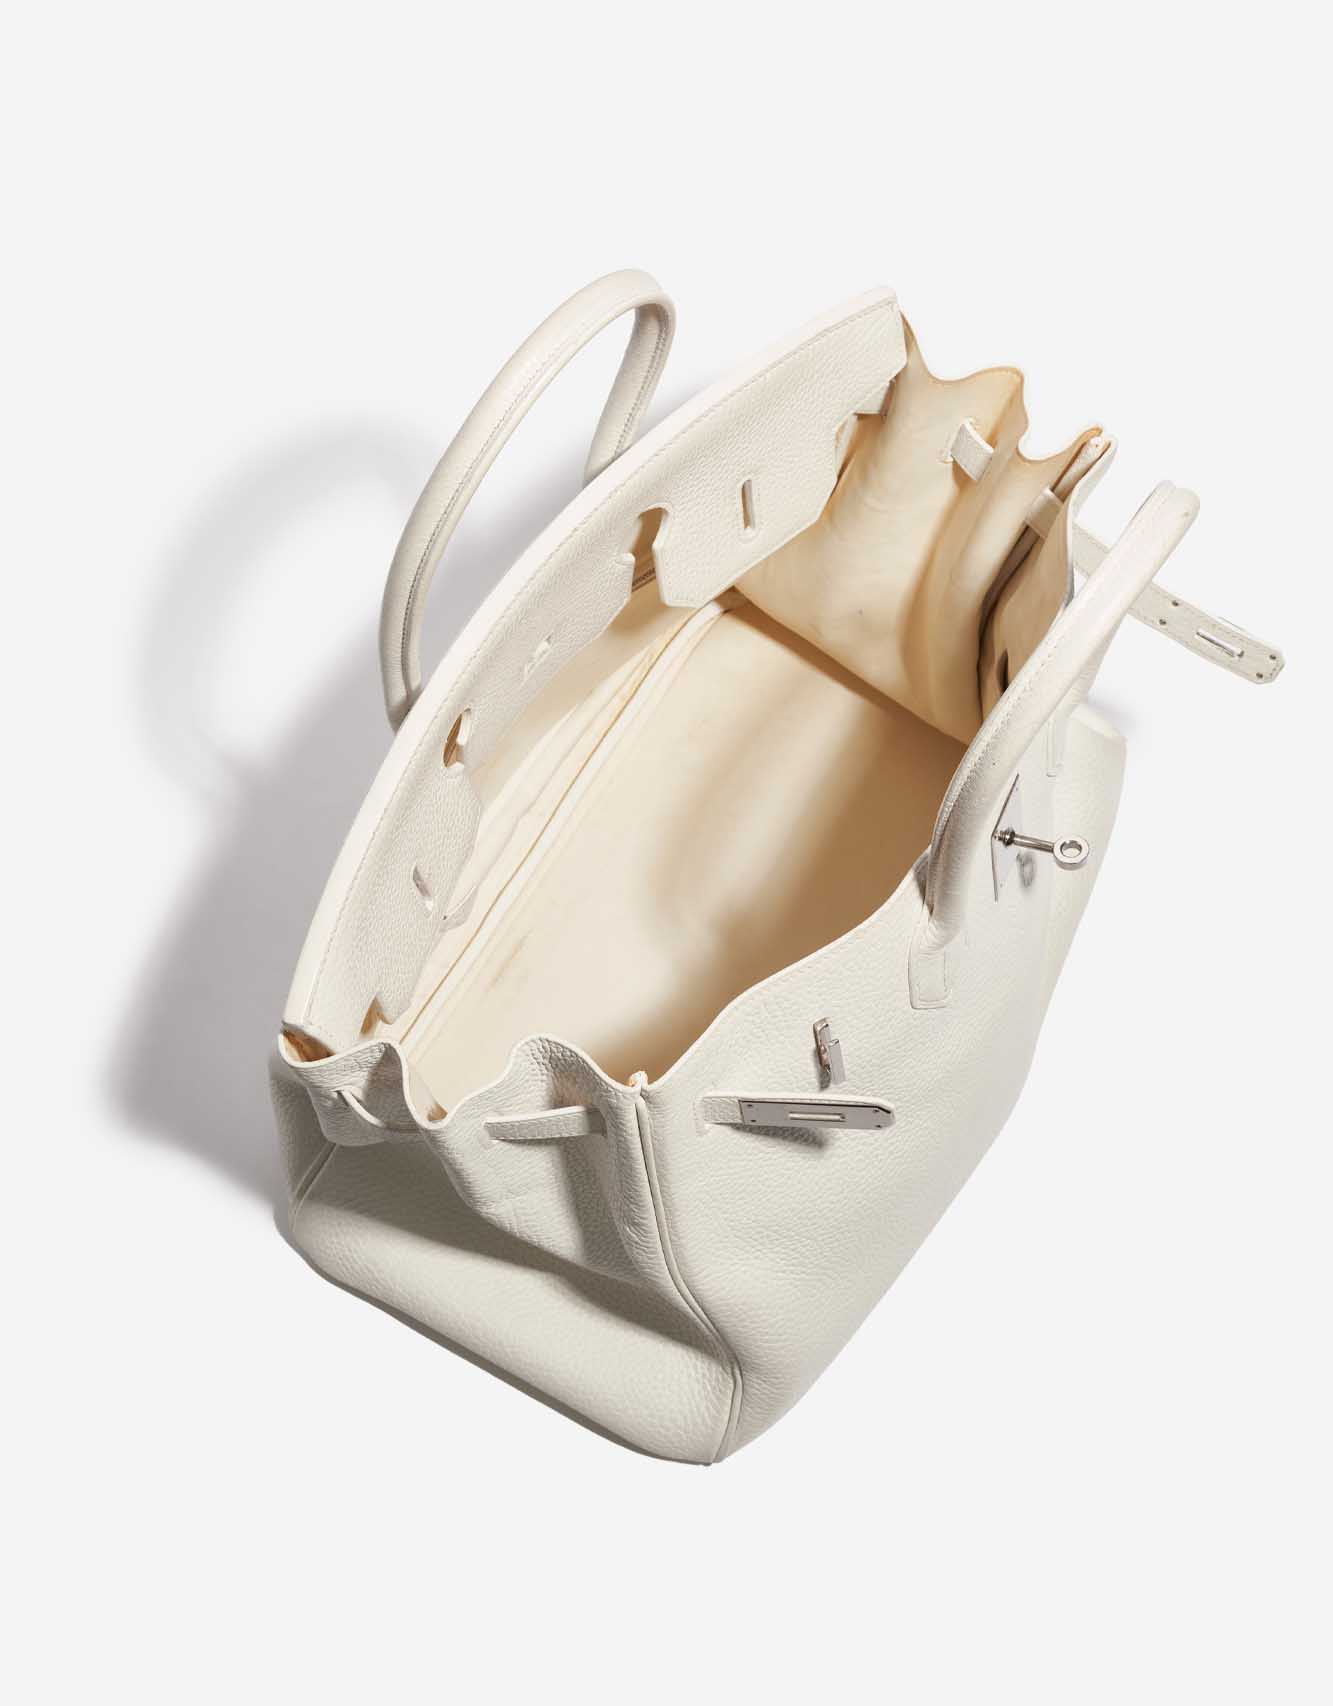 Pre-owned Hermès bag Birkin 35 Clemence White White Inside | Verkaufen Sie Ihre Designer-Tasche auf Saclab.com